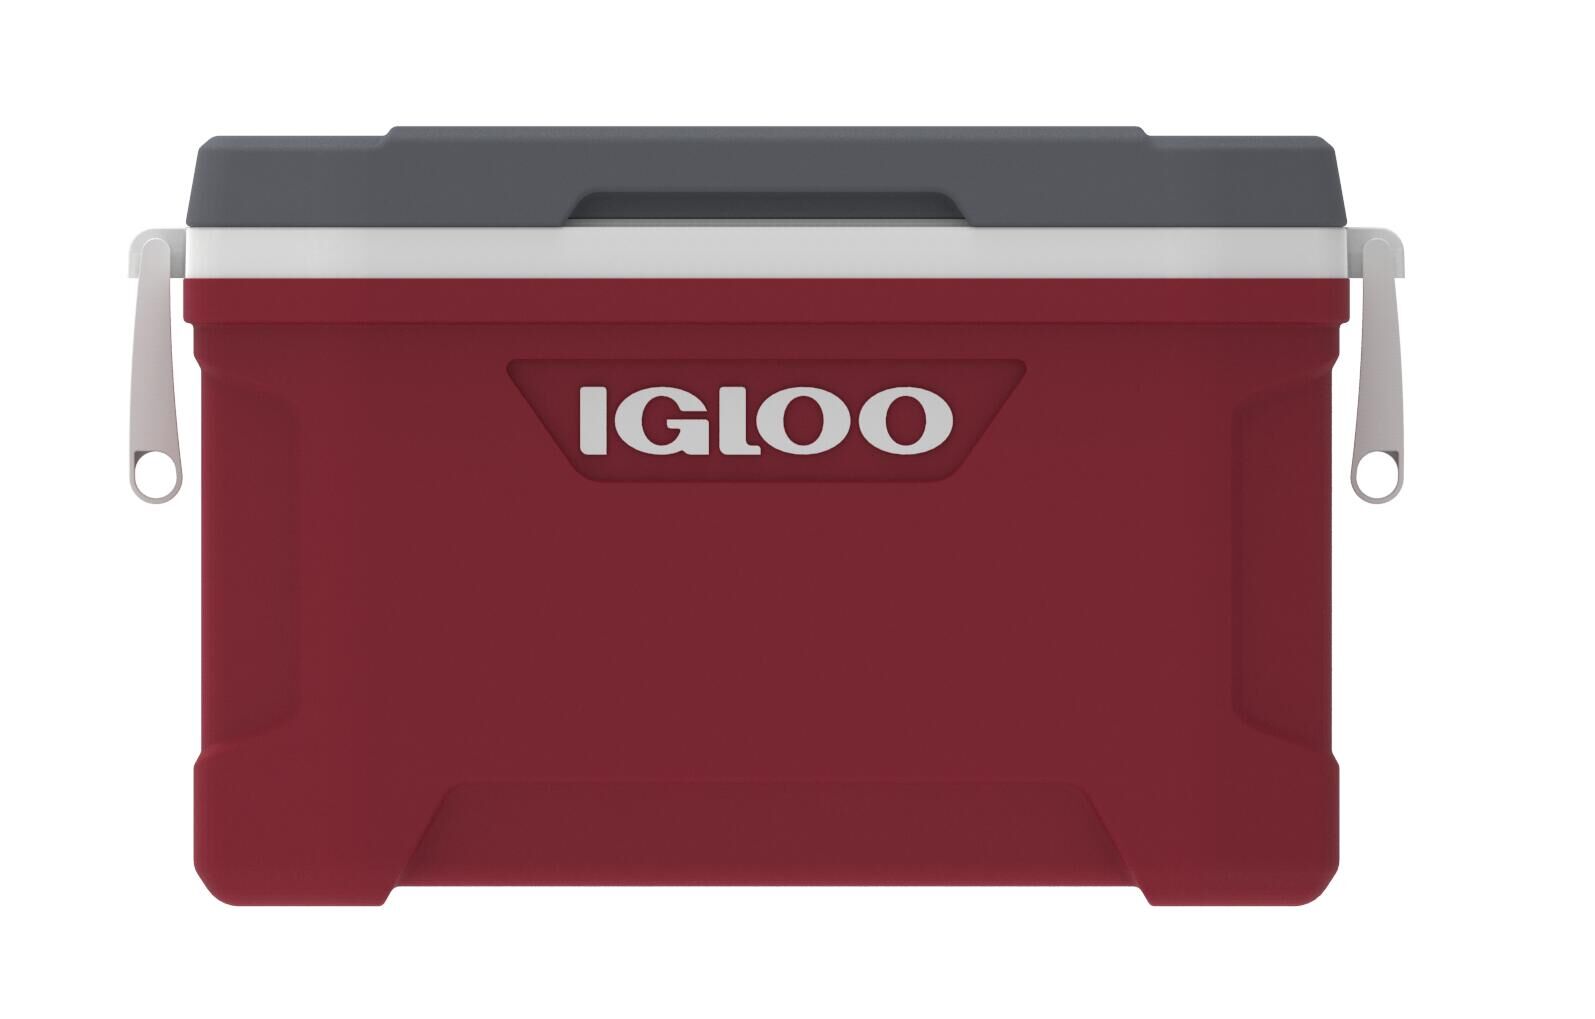 IGLOO IGLOO Latitude 52QT Cool Box Red